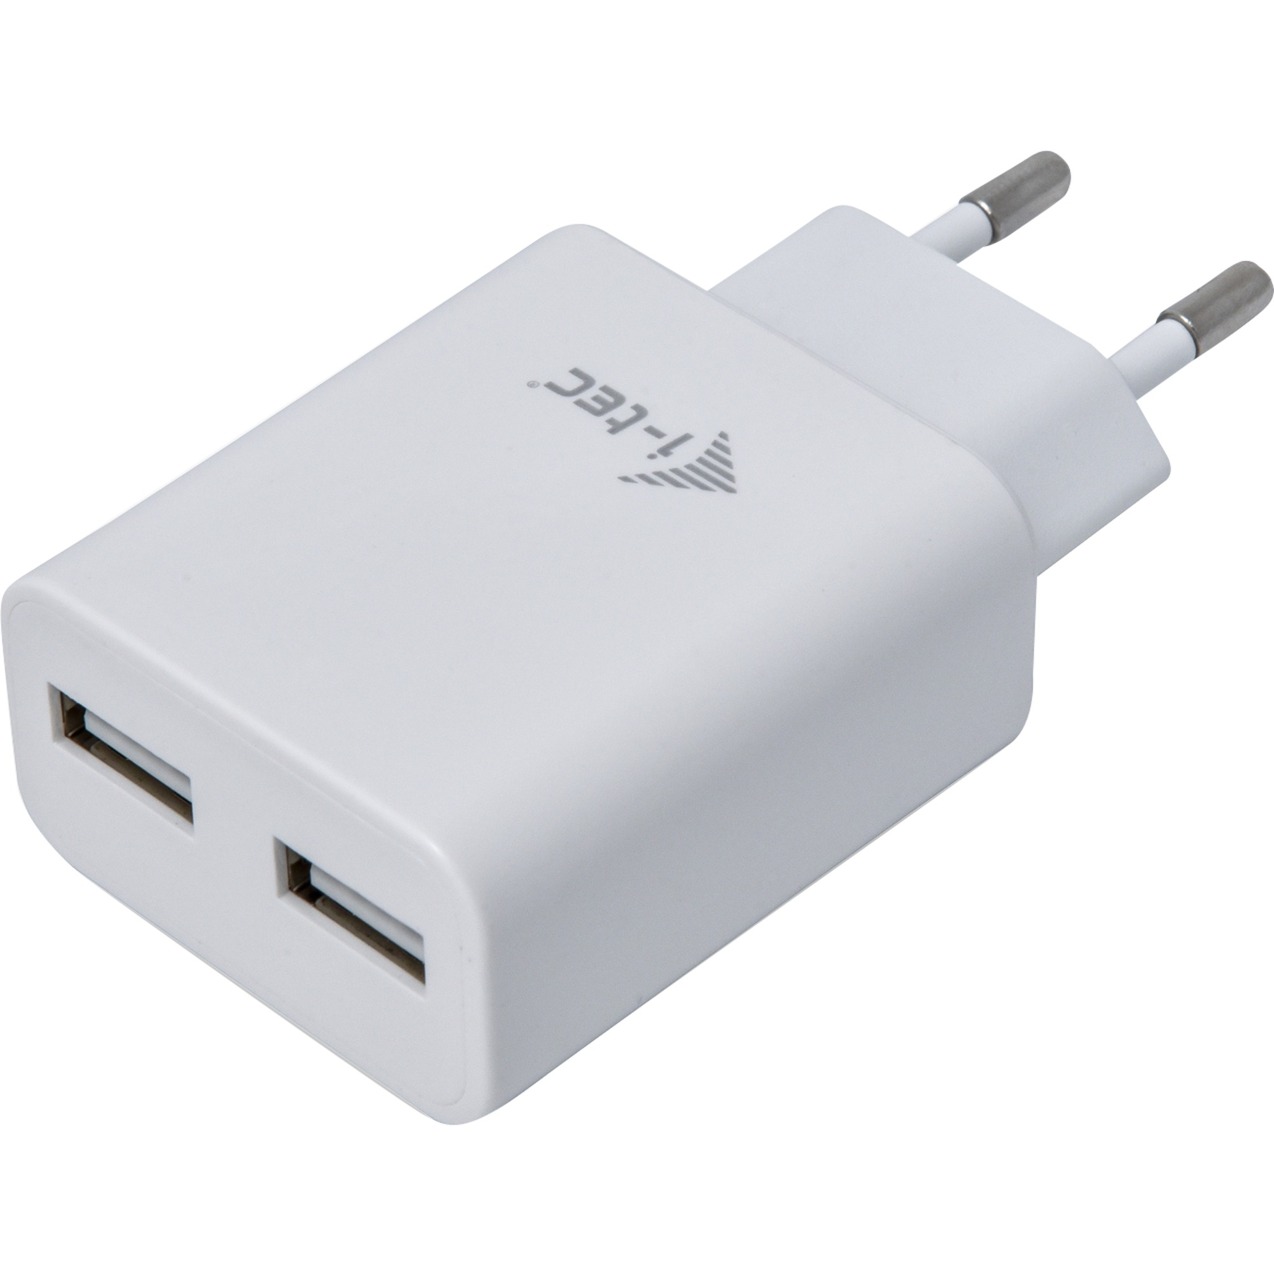 Image of Alternate - USB Power Charger 2 Port 2.4A, Netzteil online einkaufen bei Alternate